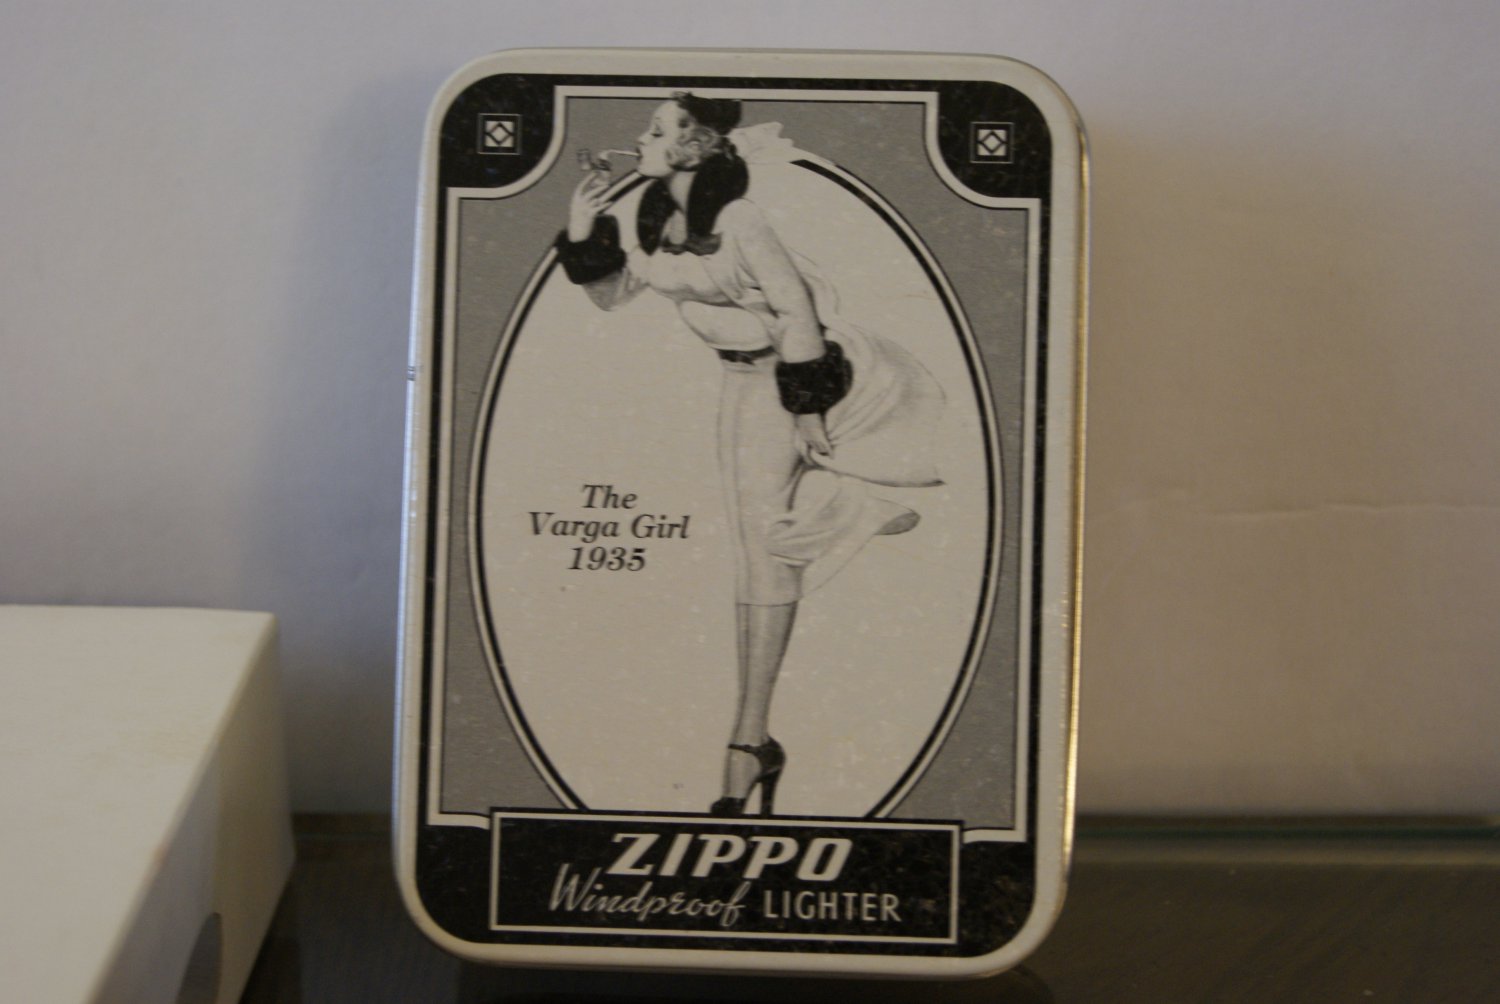 The Varga Girl 1935 Zippo Windproof lighter